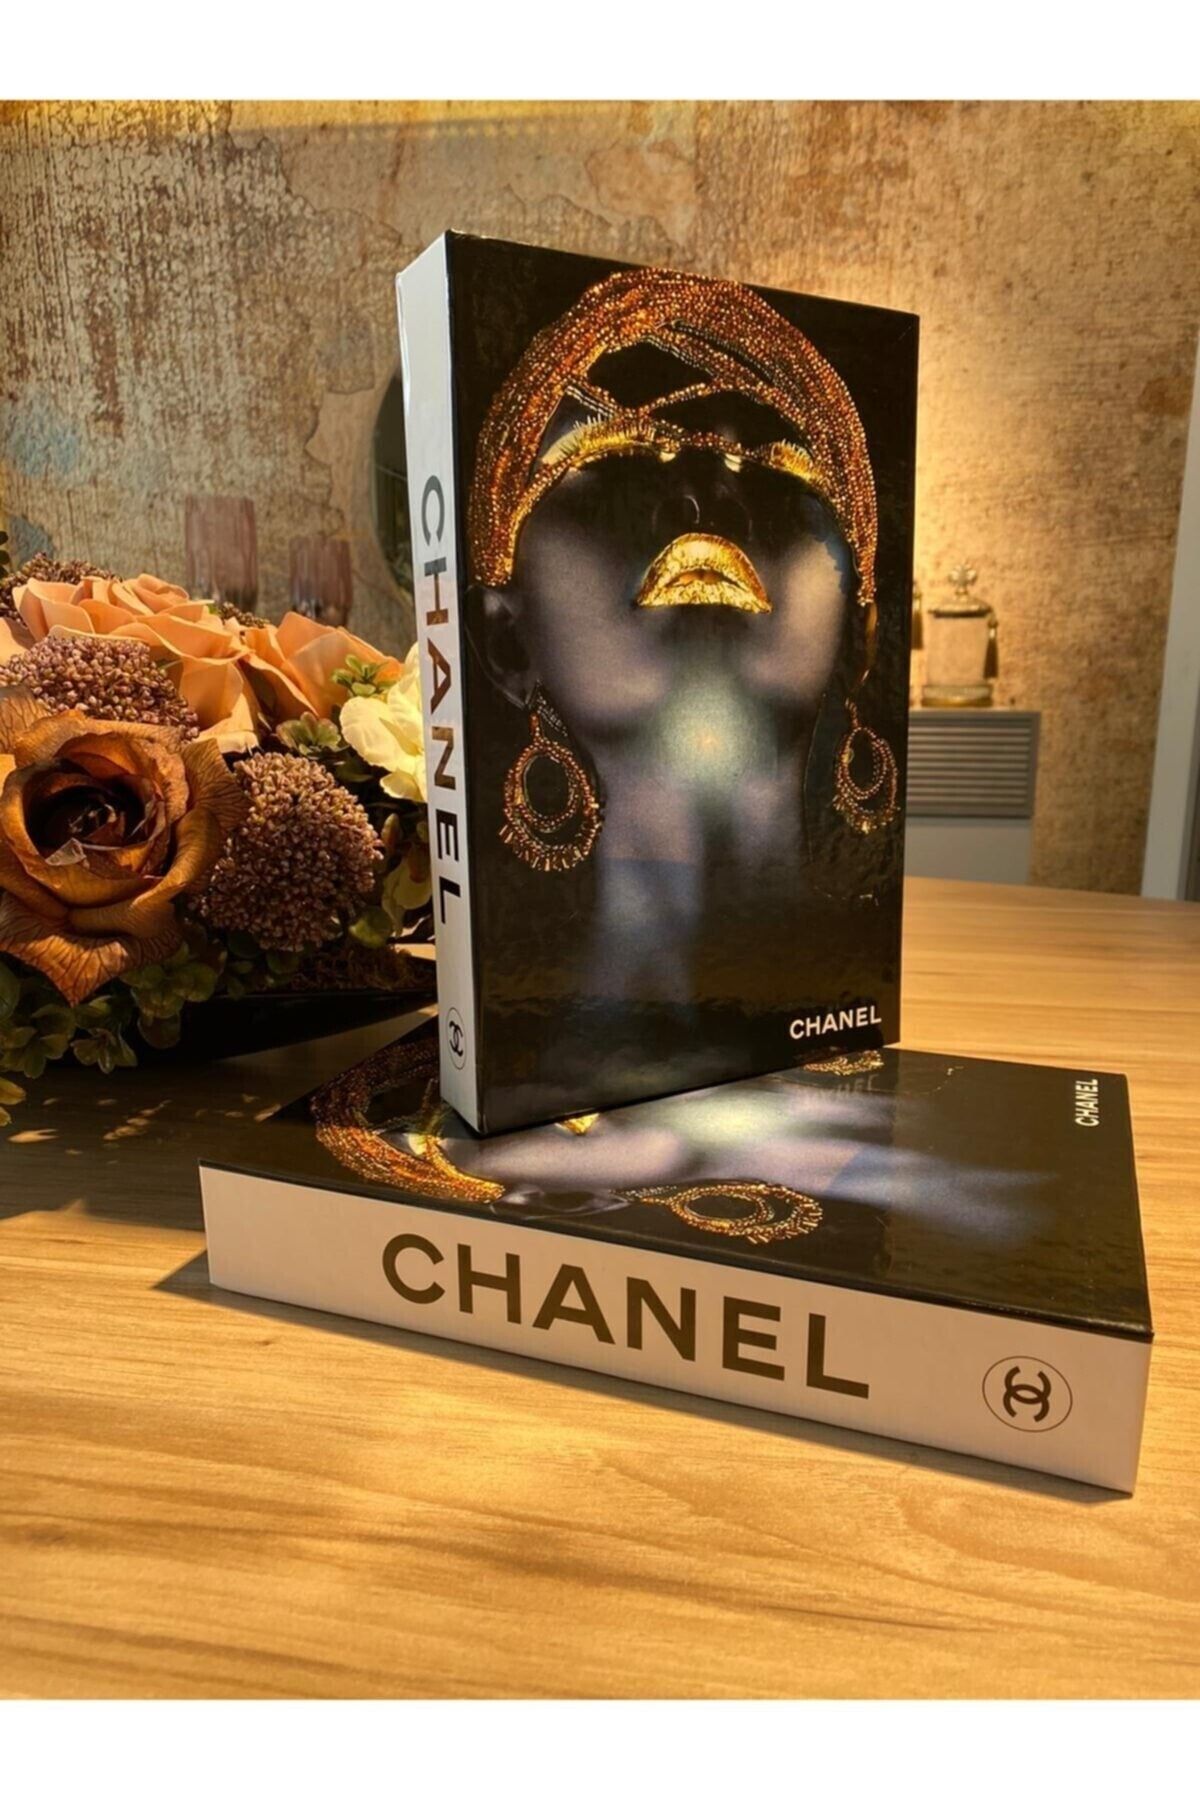 RetroLazer Chanel Kadın Dekoratif Kitap Kutu